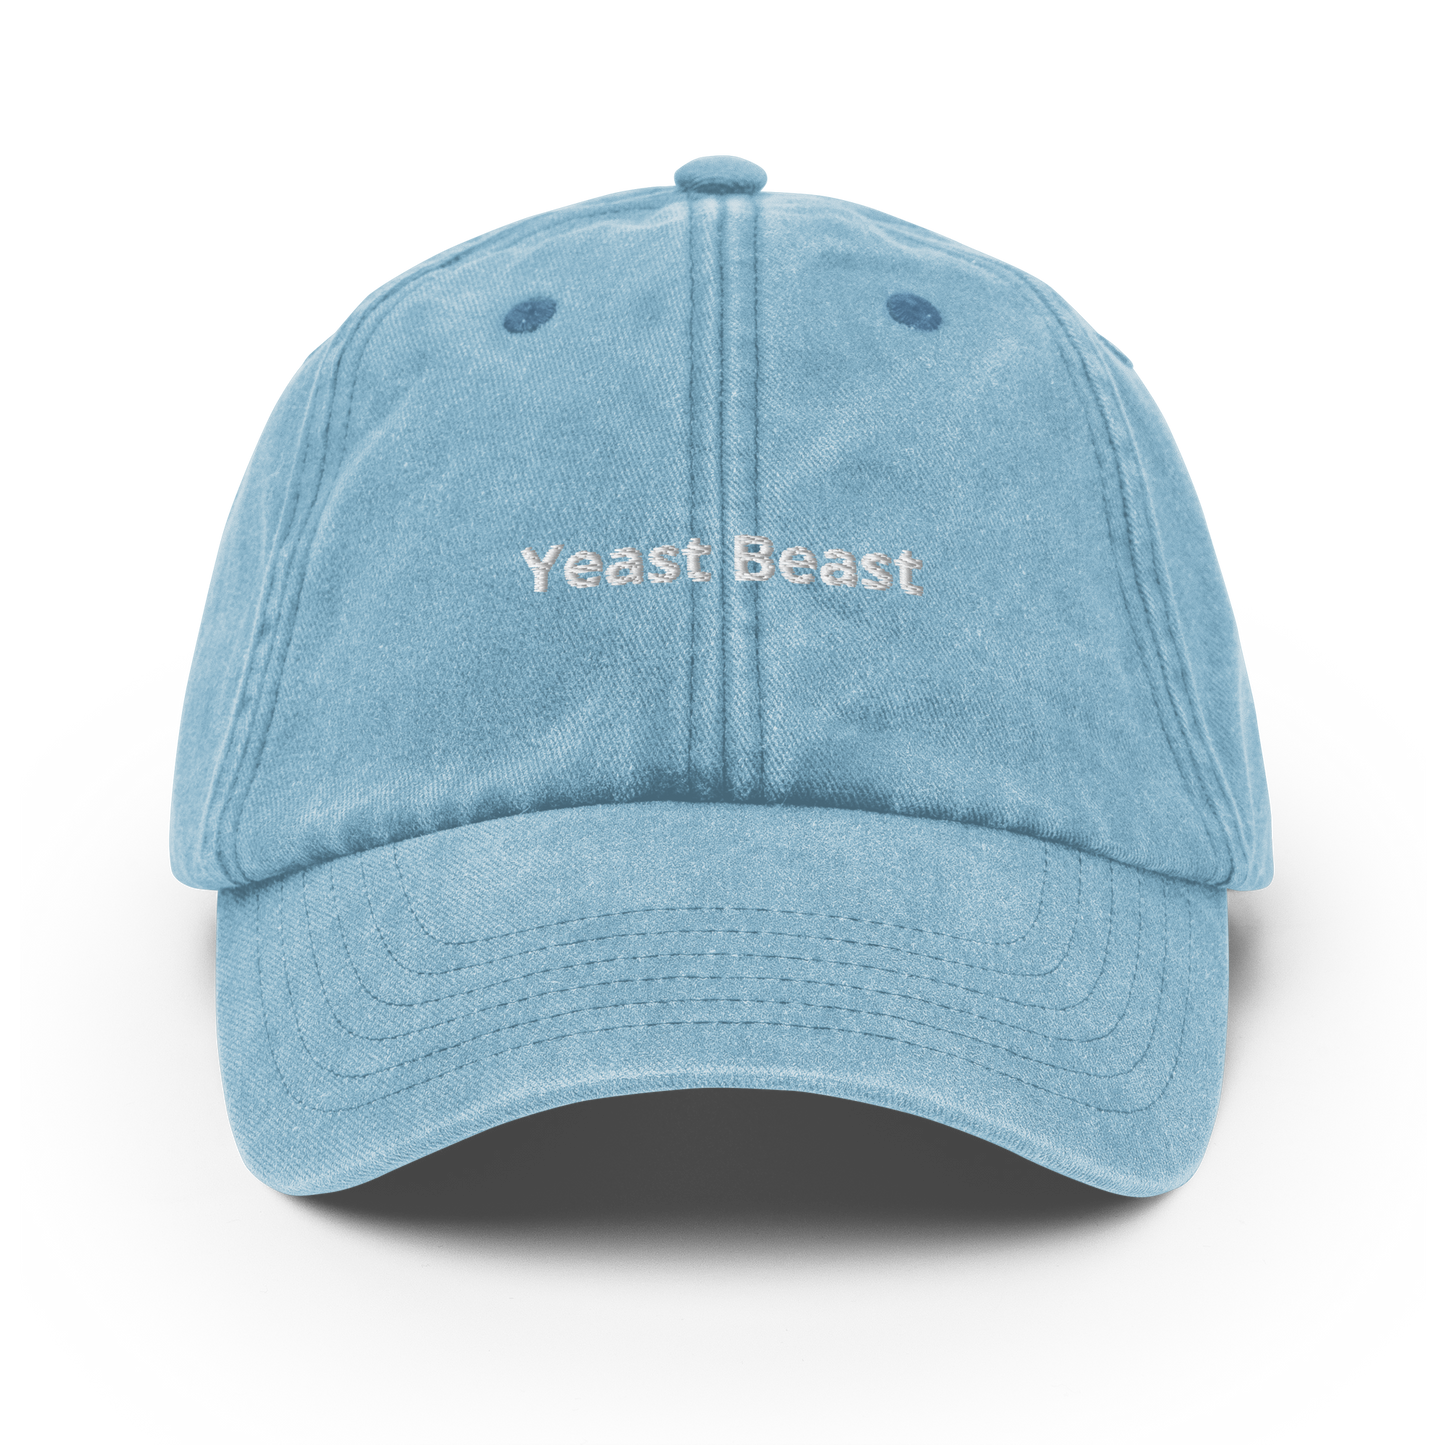 Yeast Beast - Vintage Hat